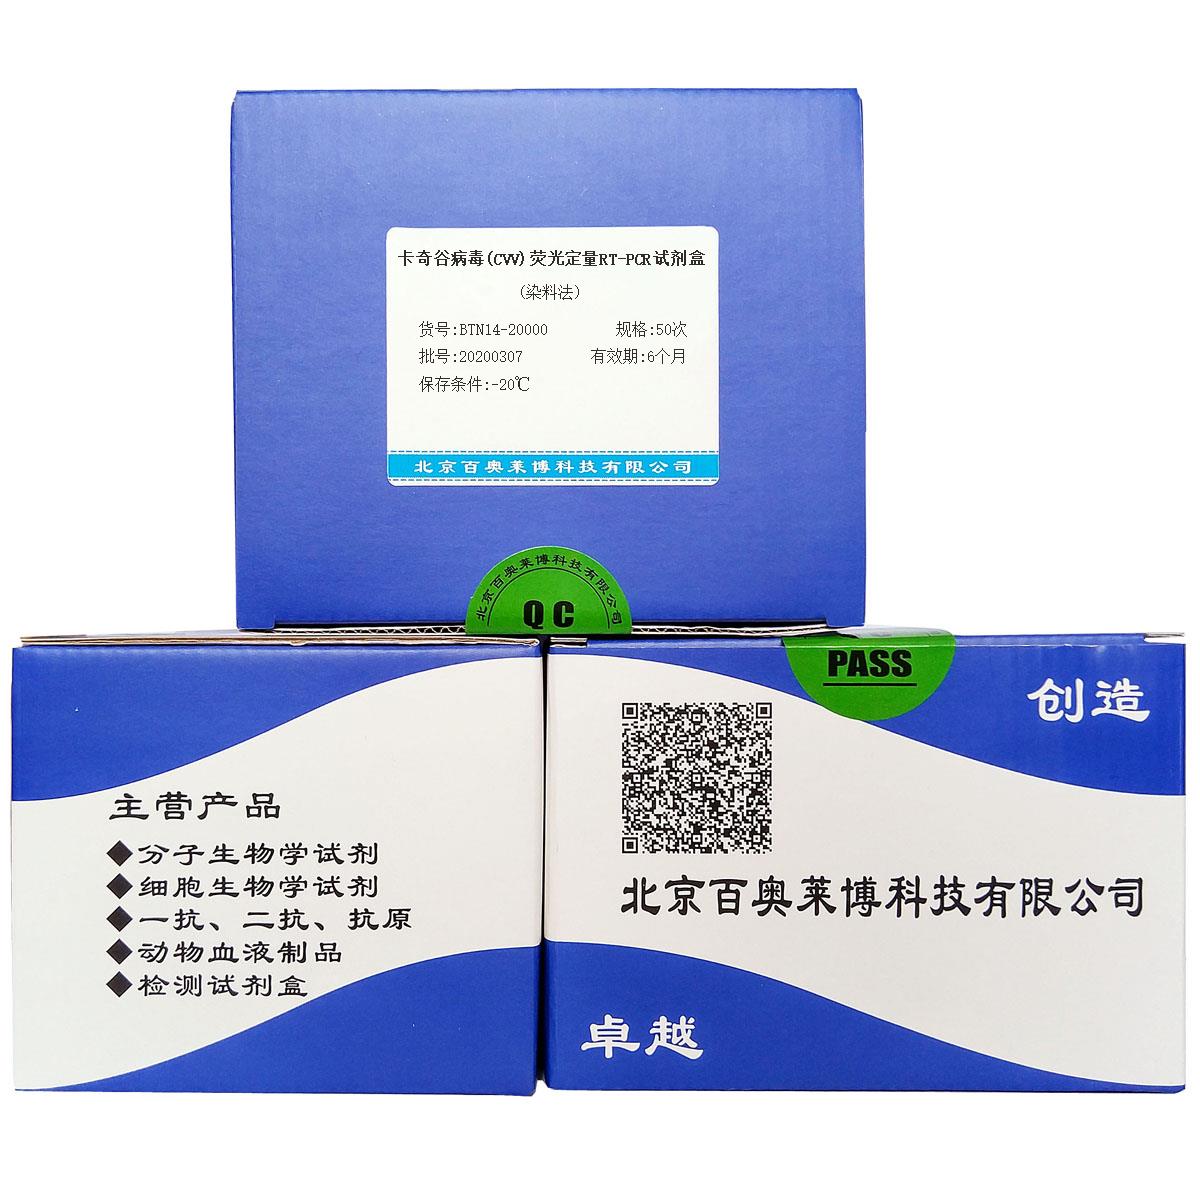 卡奇谷病毒(CVV)荧光定量RT-PCR试剂盒(染料法)